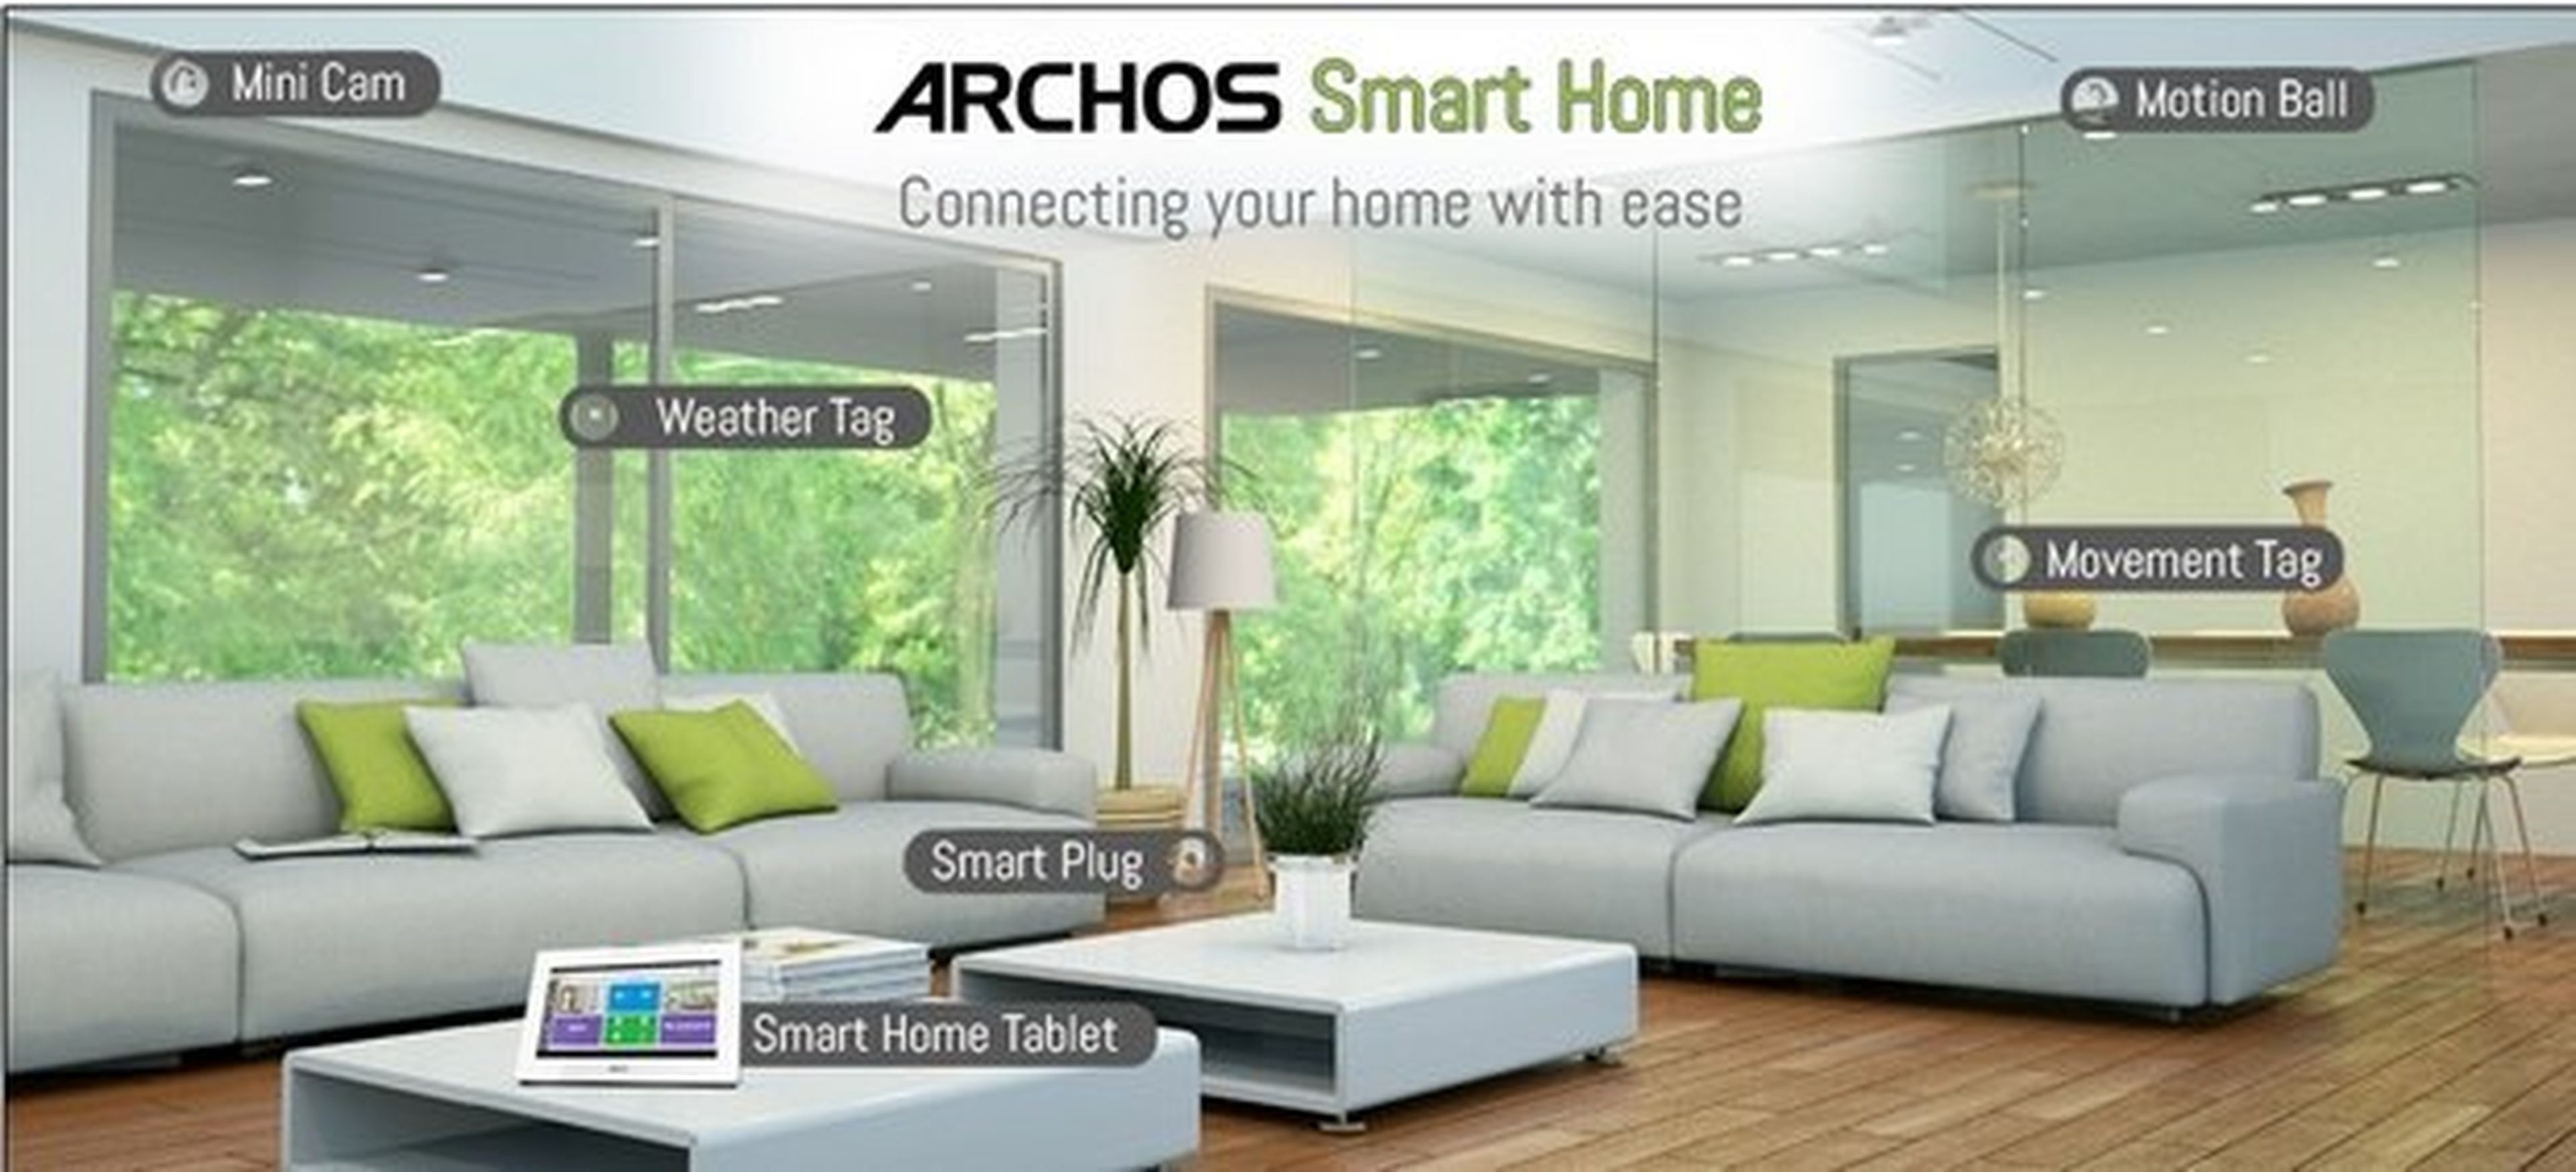 Archos Smart Home CES 2014